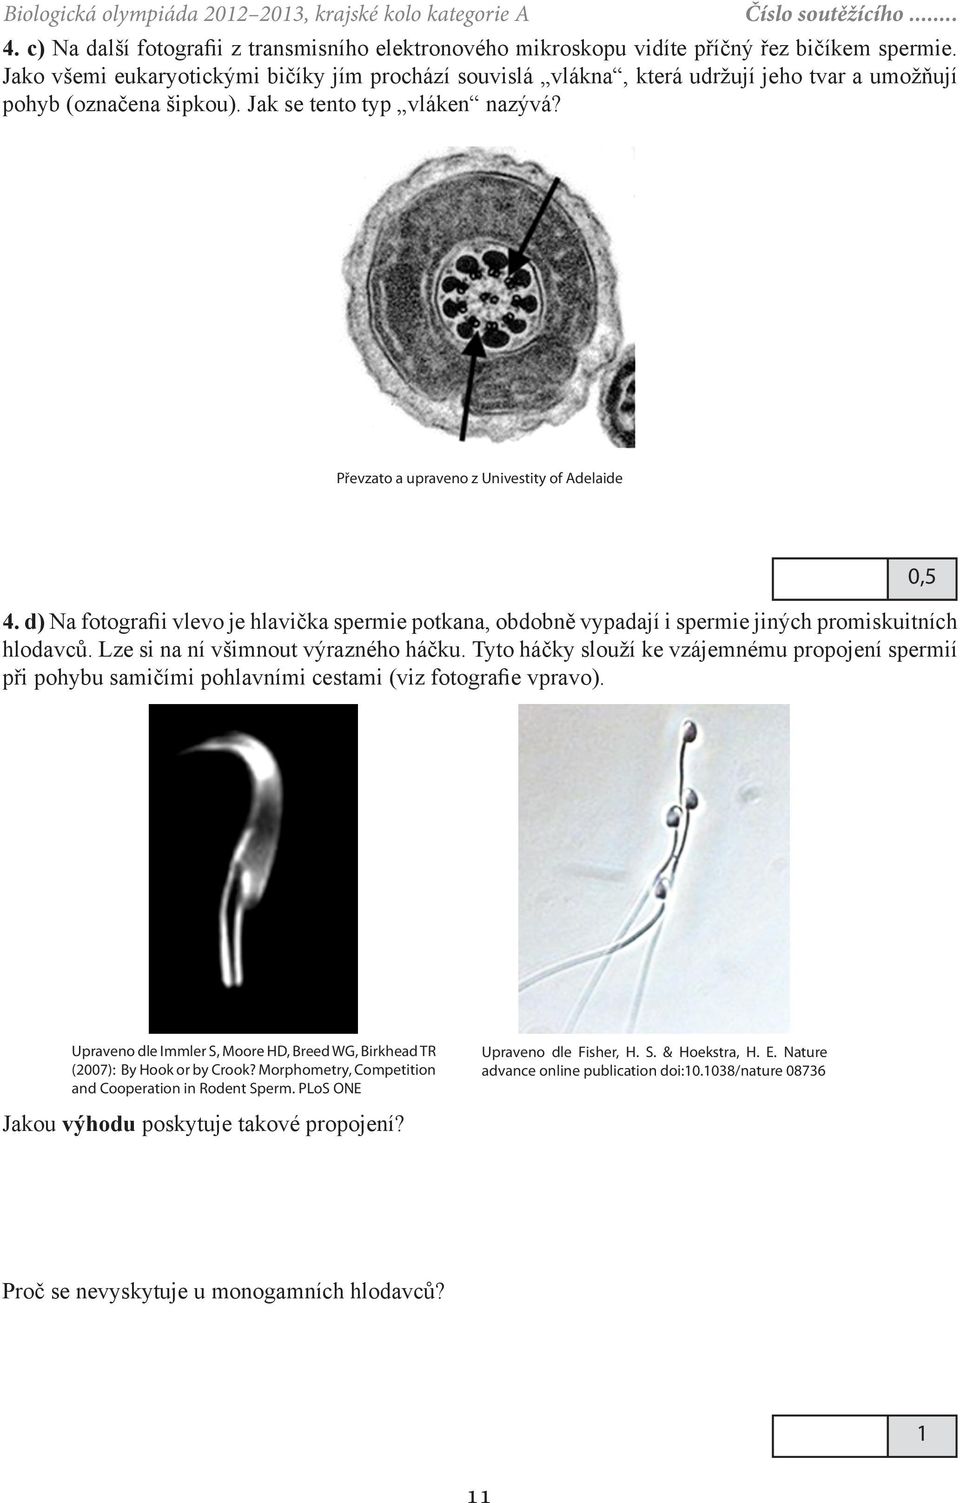 Převzato a upraveno z Univestity of Adelaide 4. d) Na fotografii vlevo je hlavička spermie potkana, obdobně vypadají i spermie jiných promiskuitních hlodavců. Lze si na ní všimnout výrazného háčku.